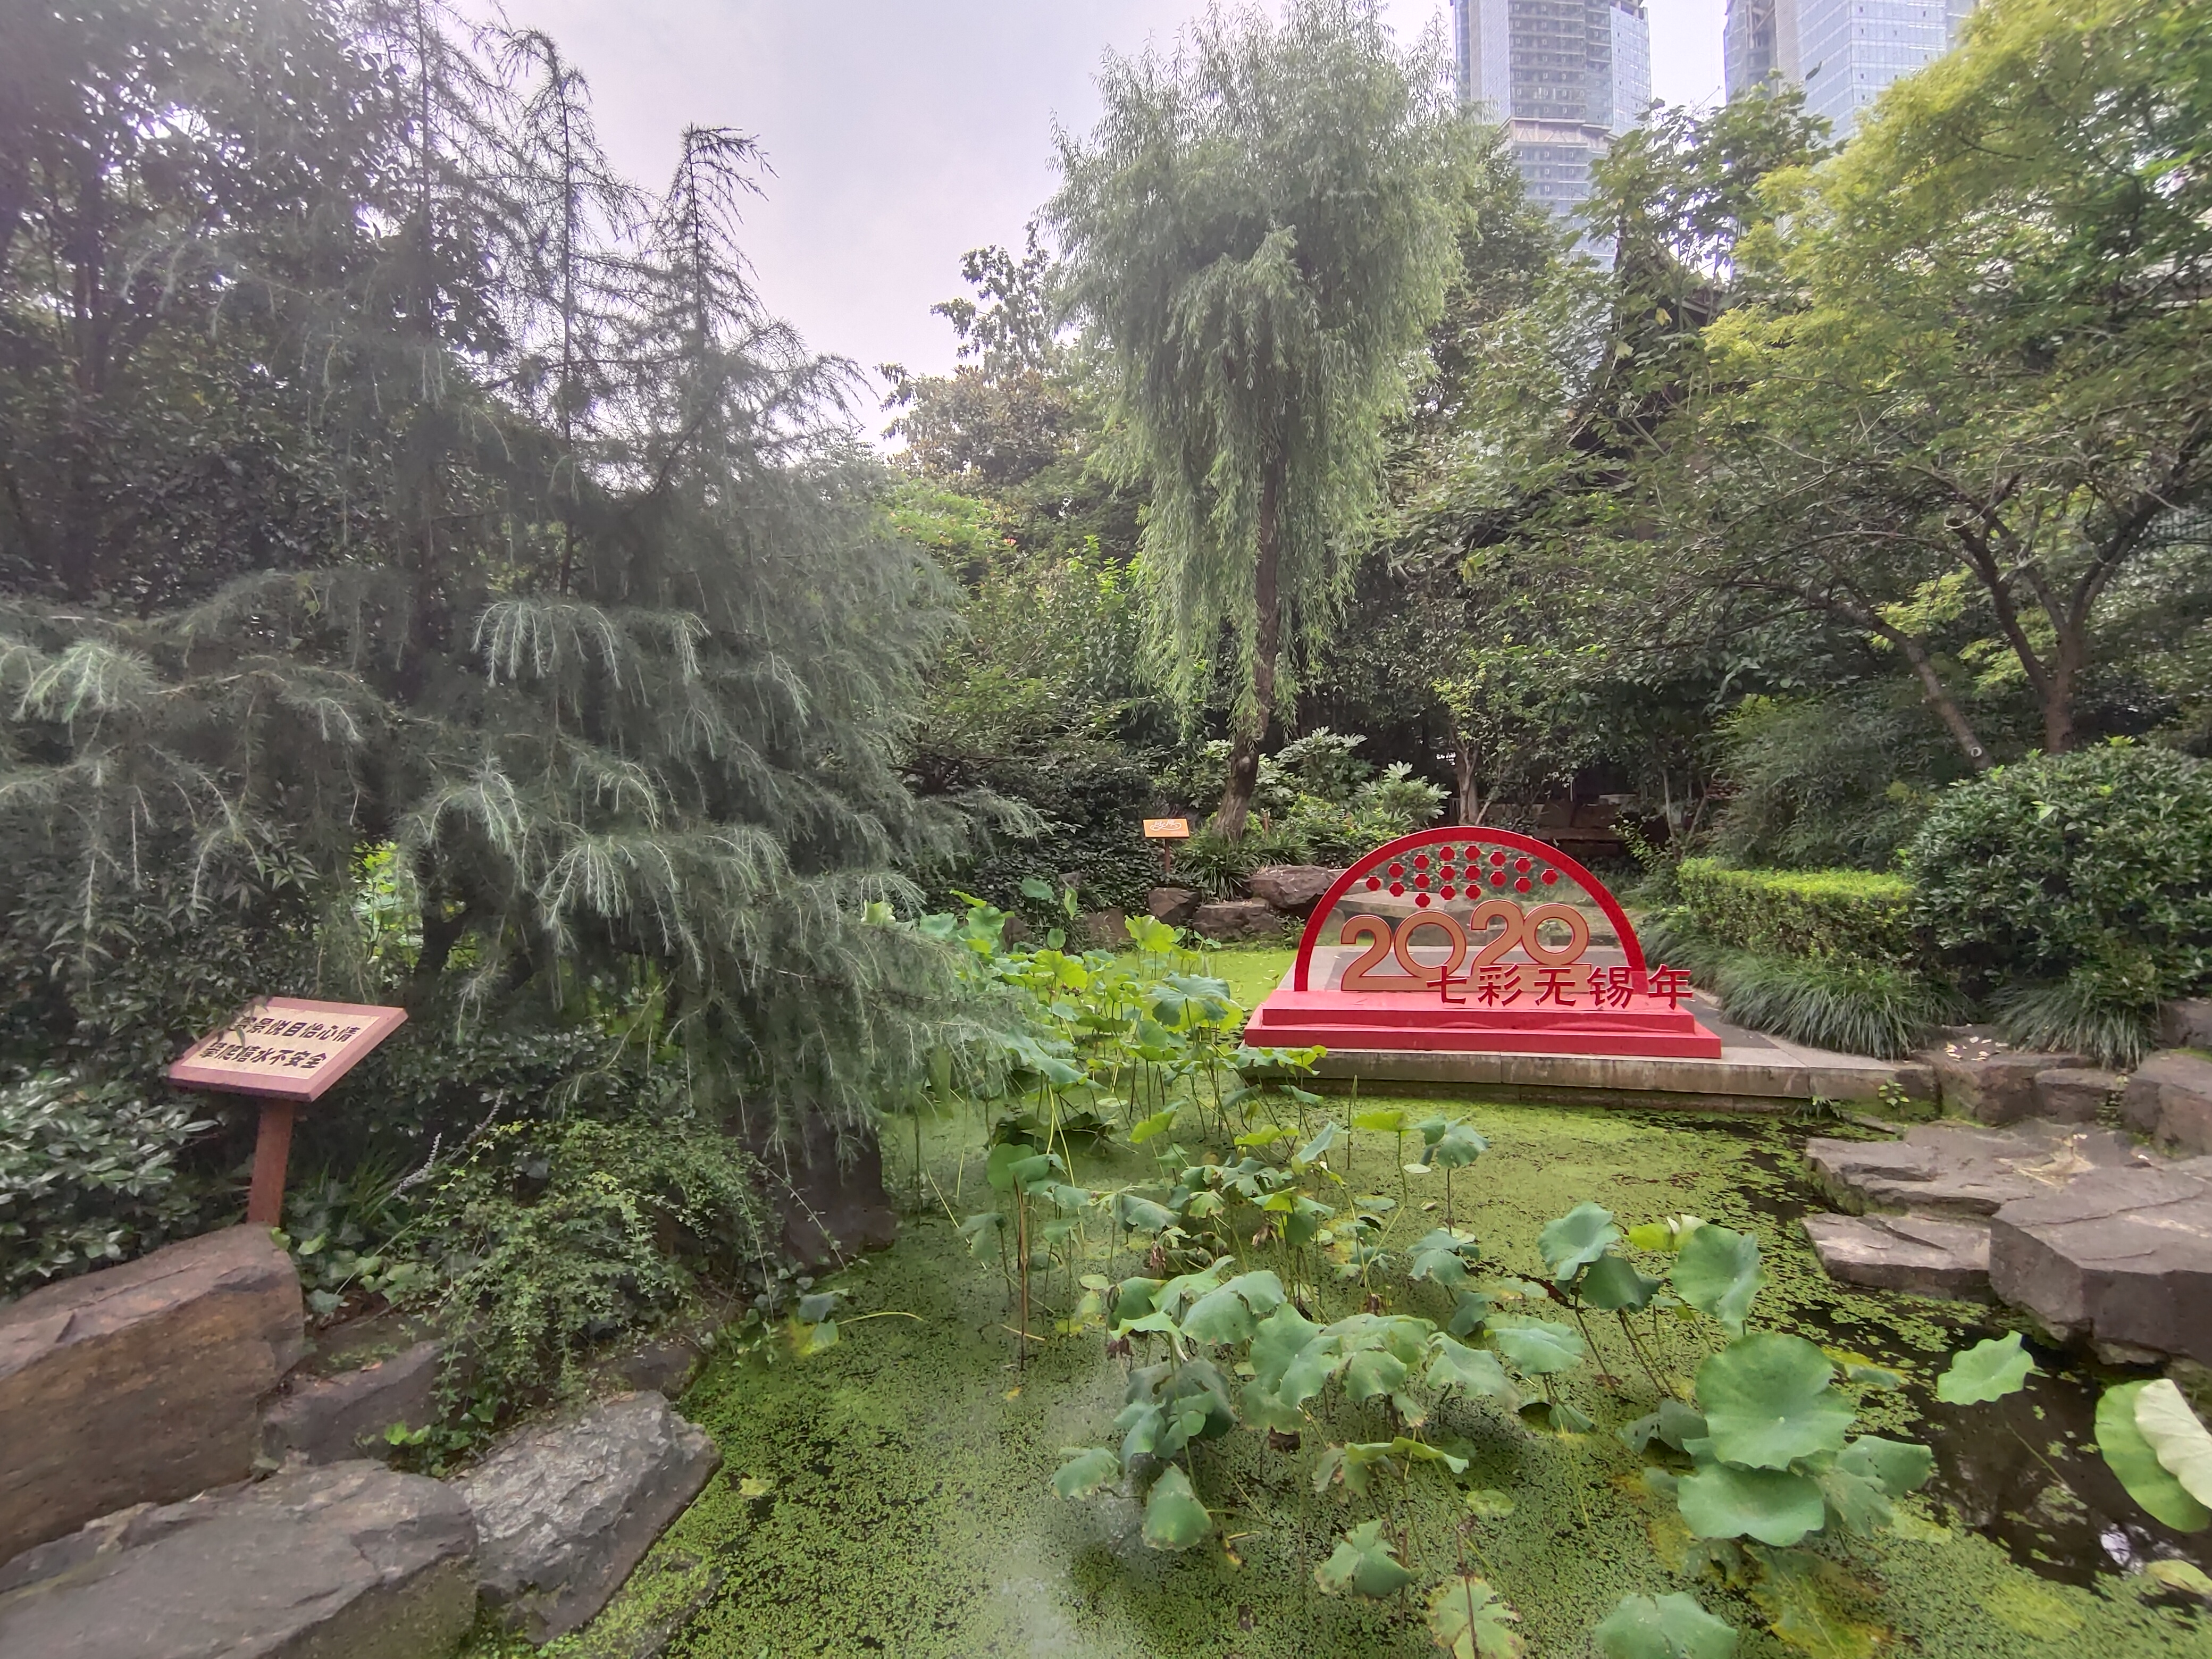 无锡城中公园又名公花园，位于无锡市公园路14号，西临中山路